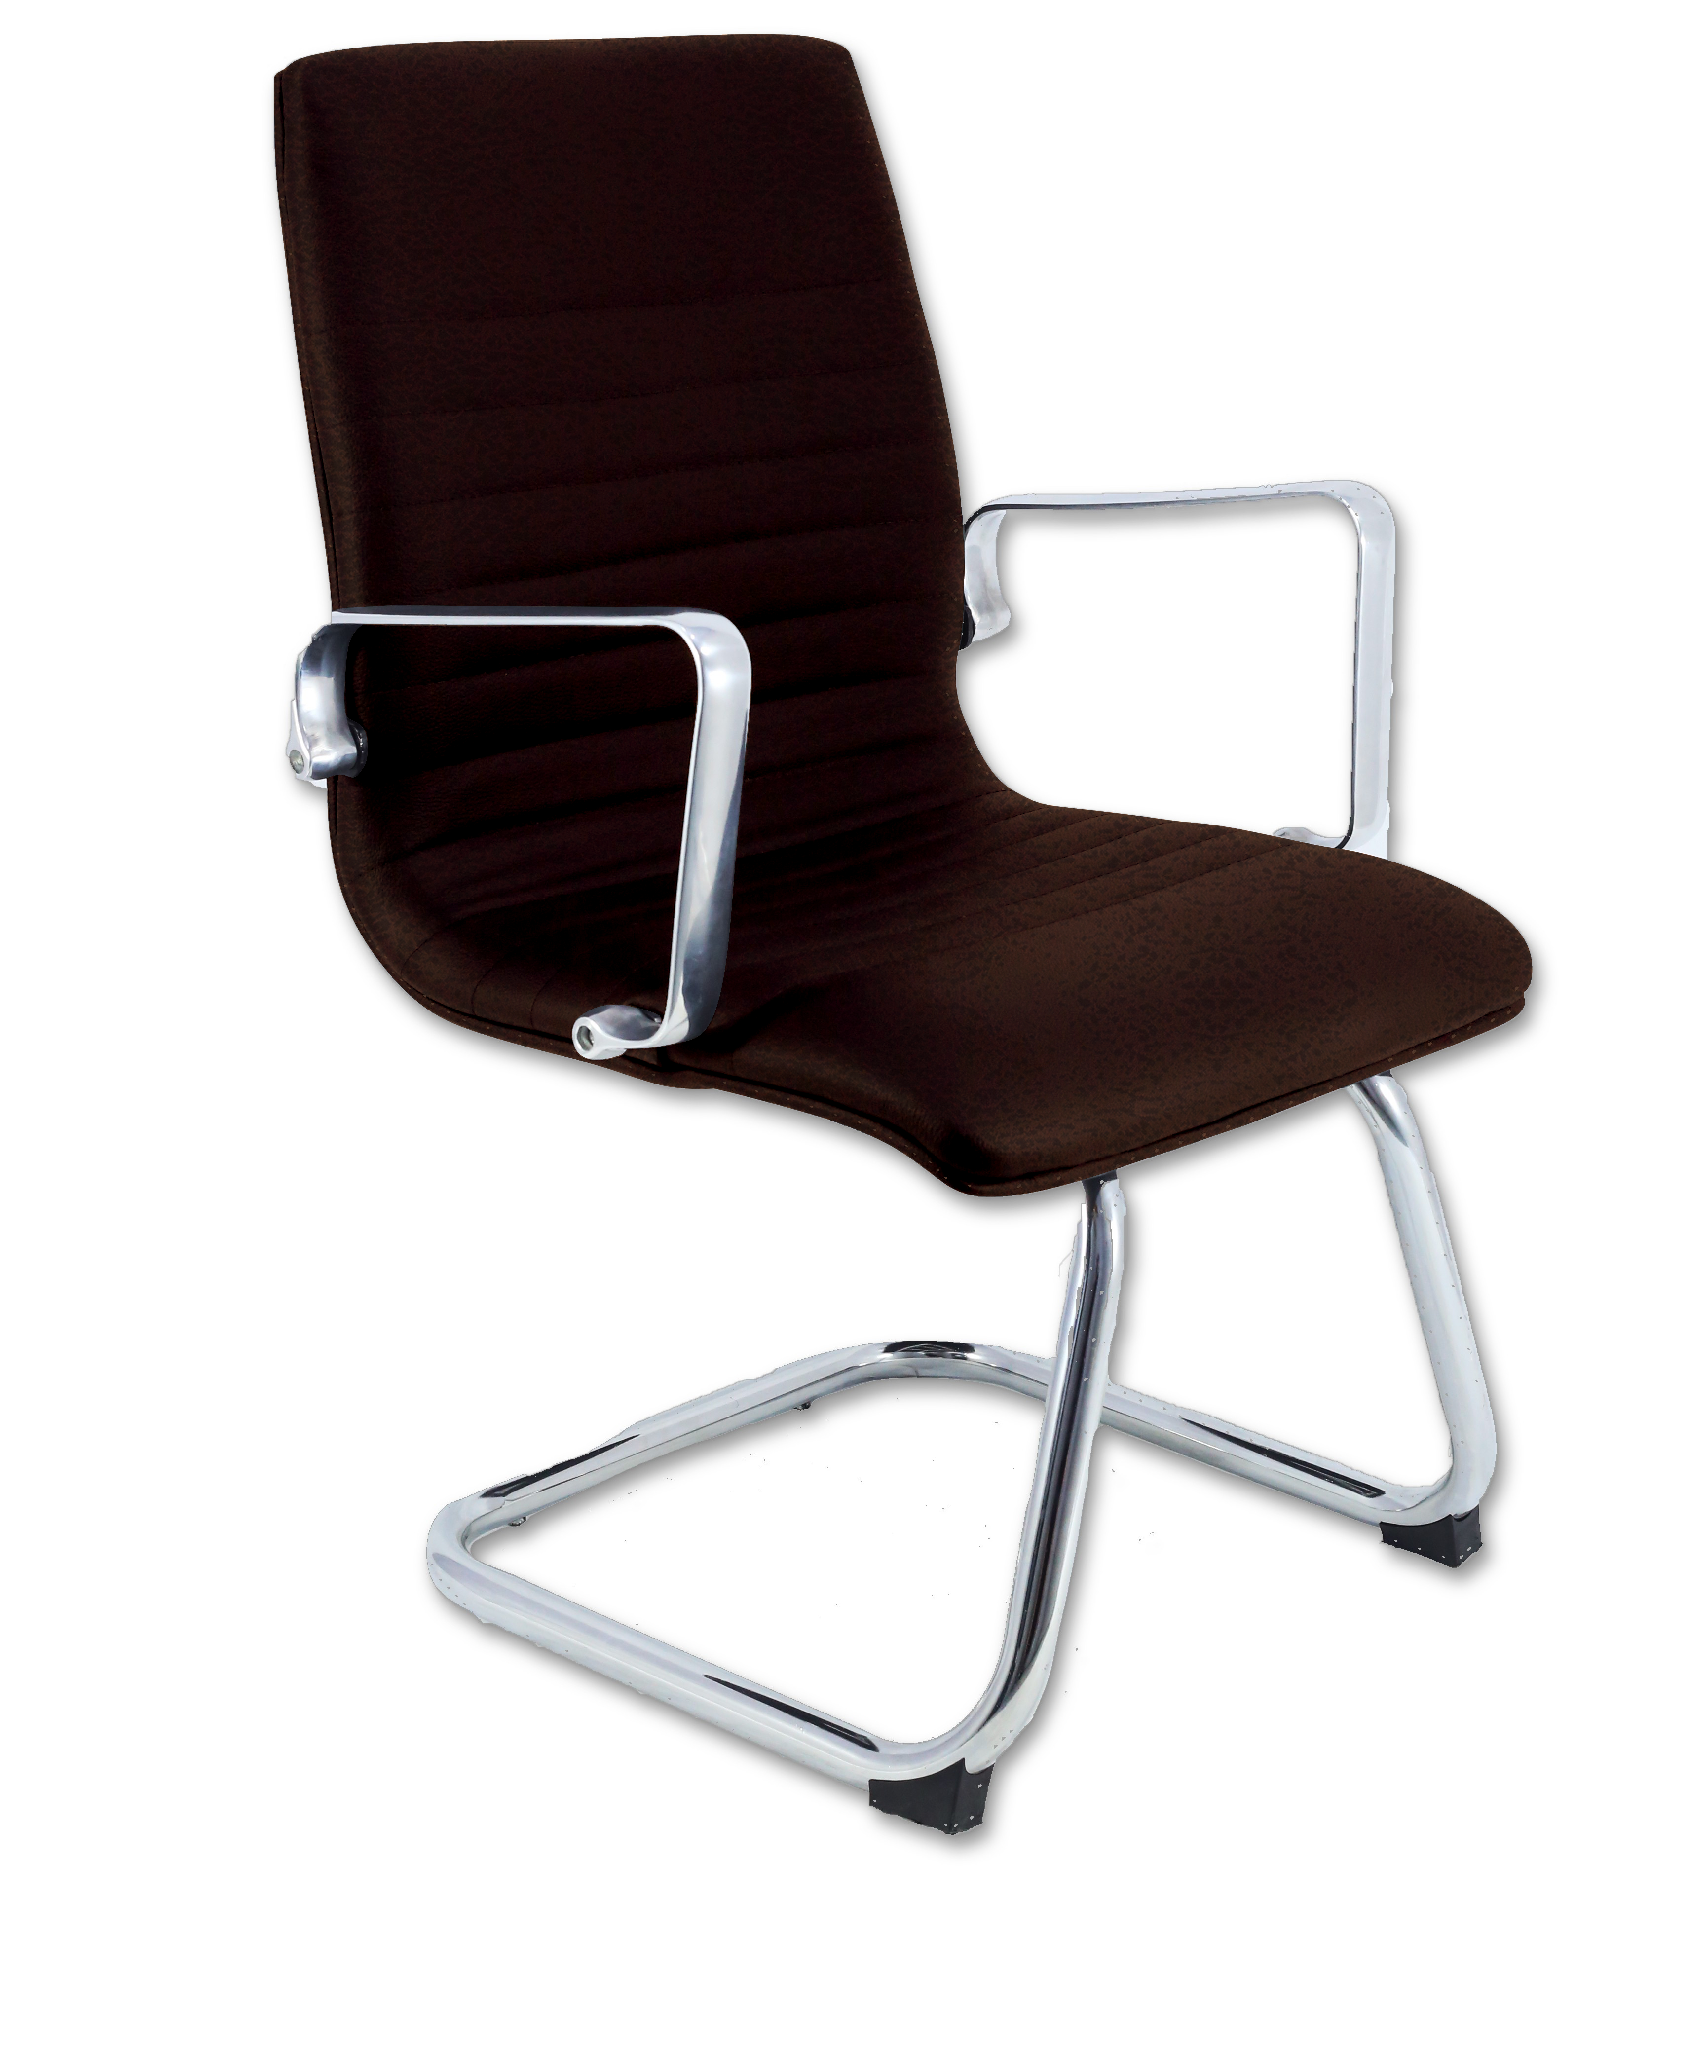 Cadeira Diretor Inspired Eames fixa Office Suede Marrom